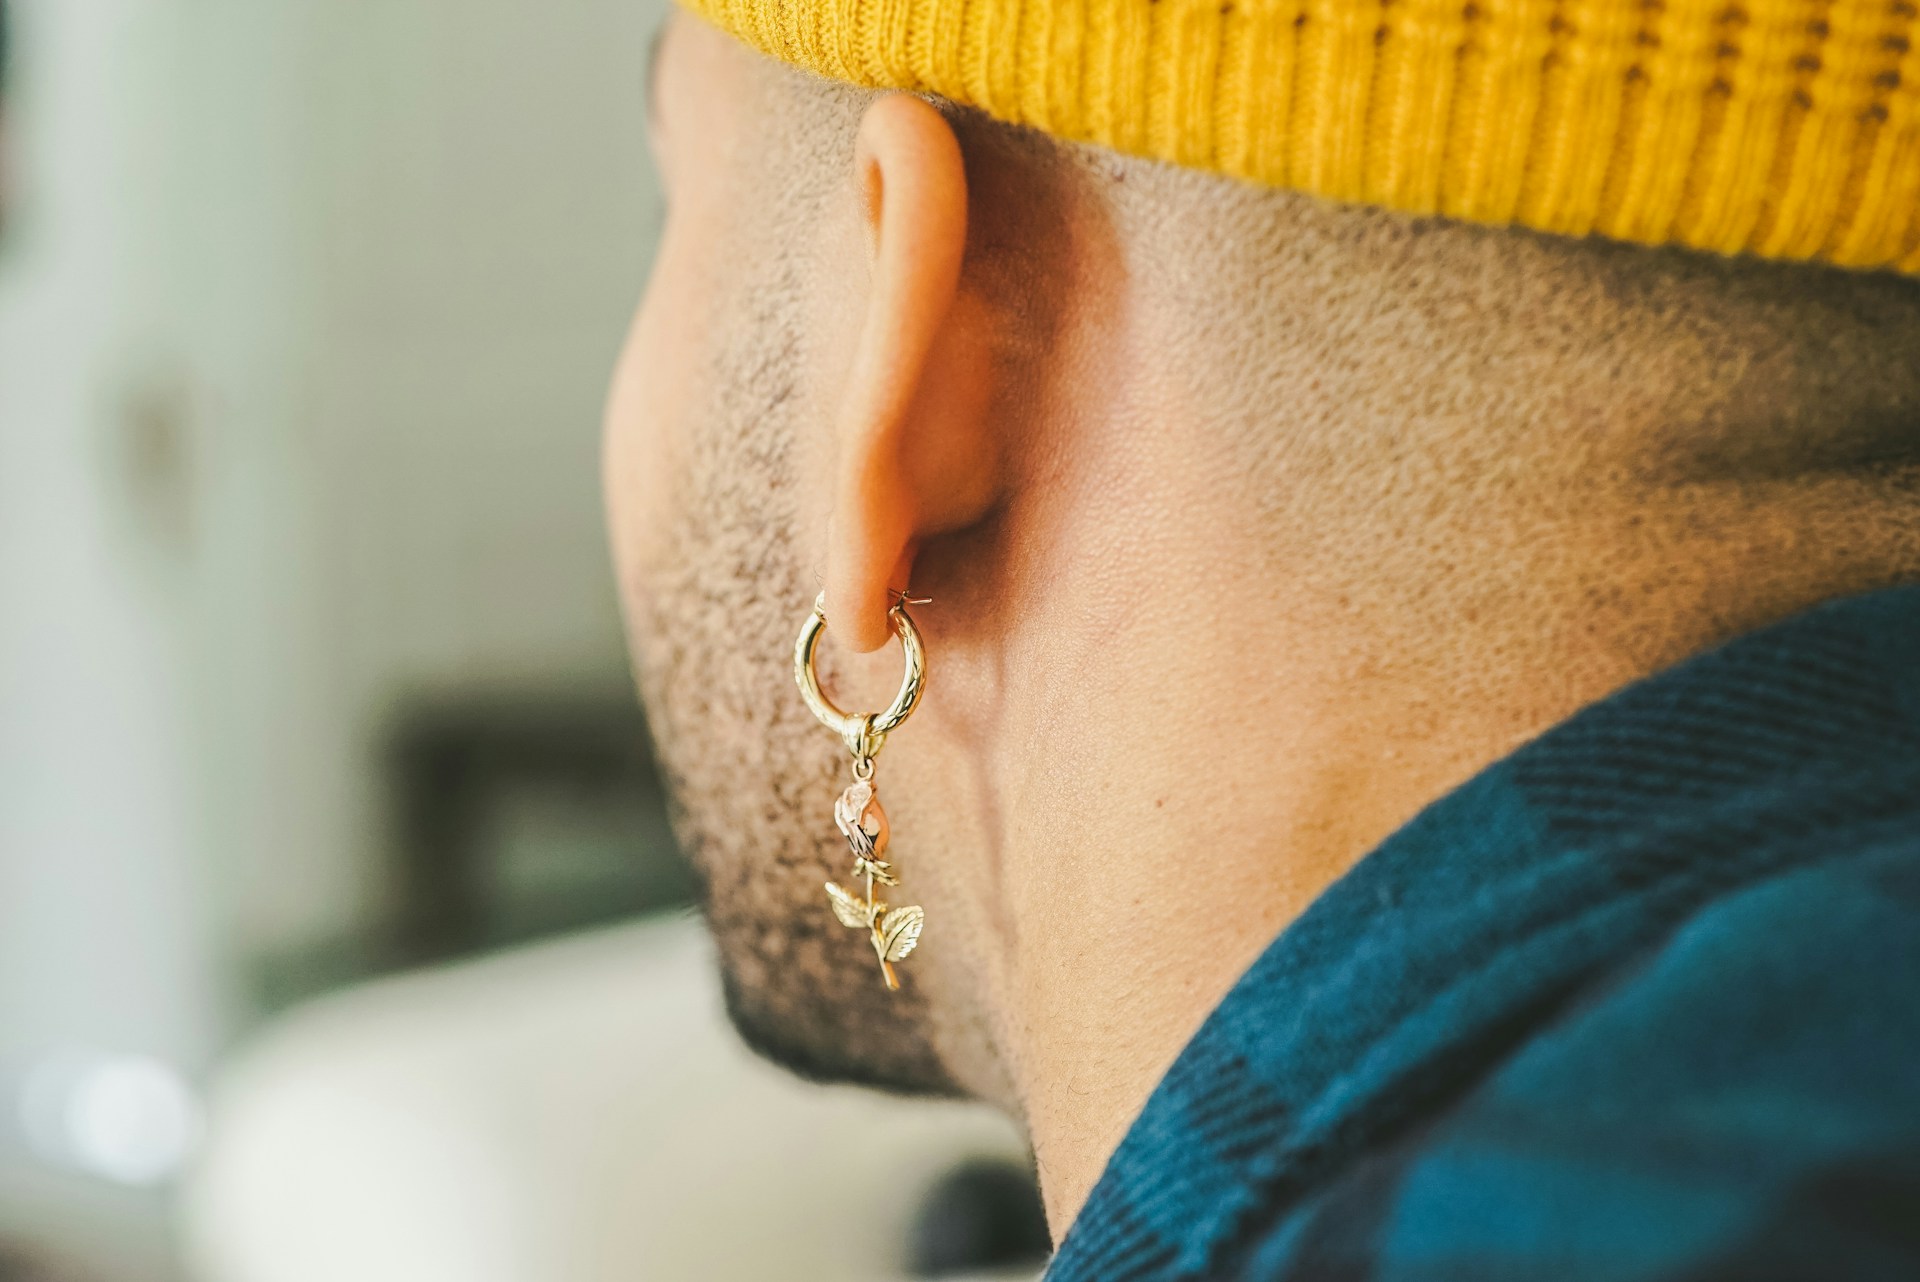 ear piercings benefits